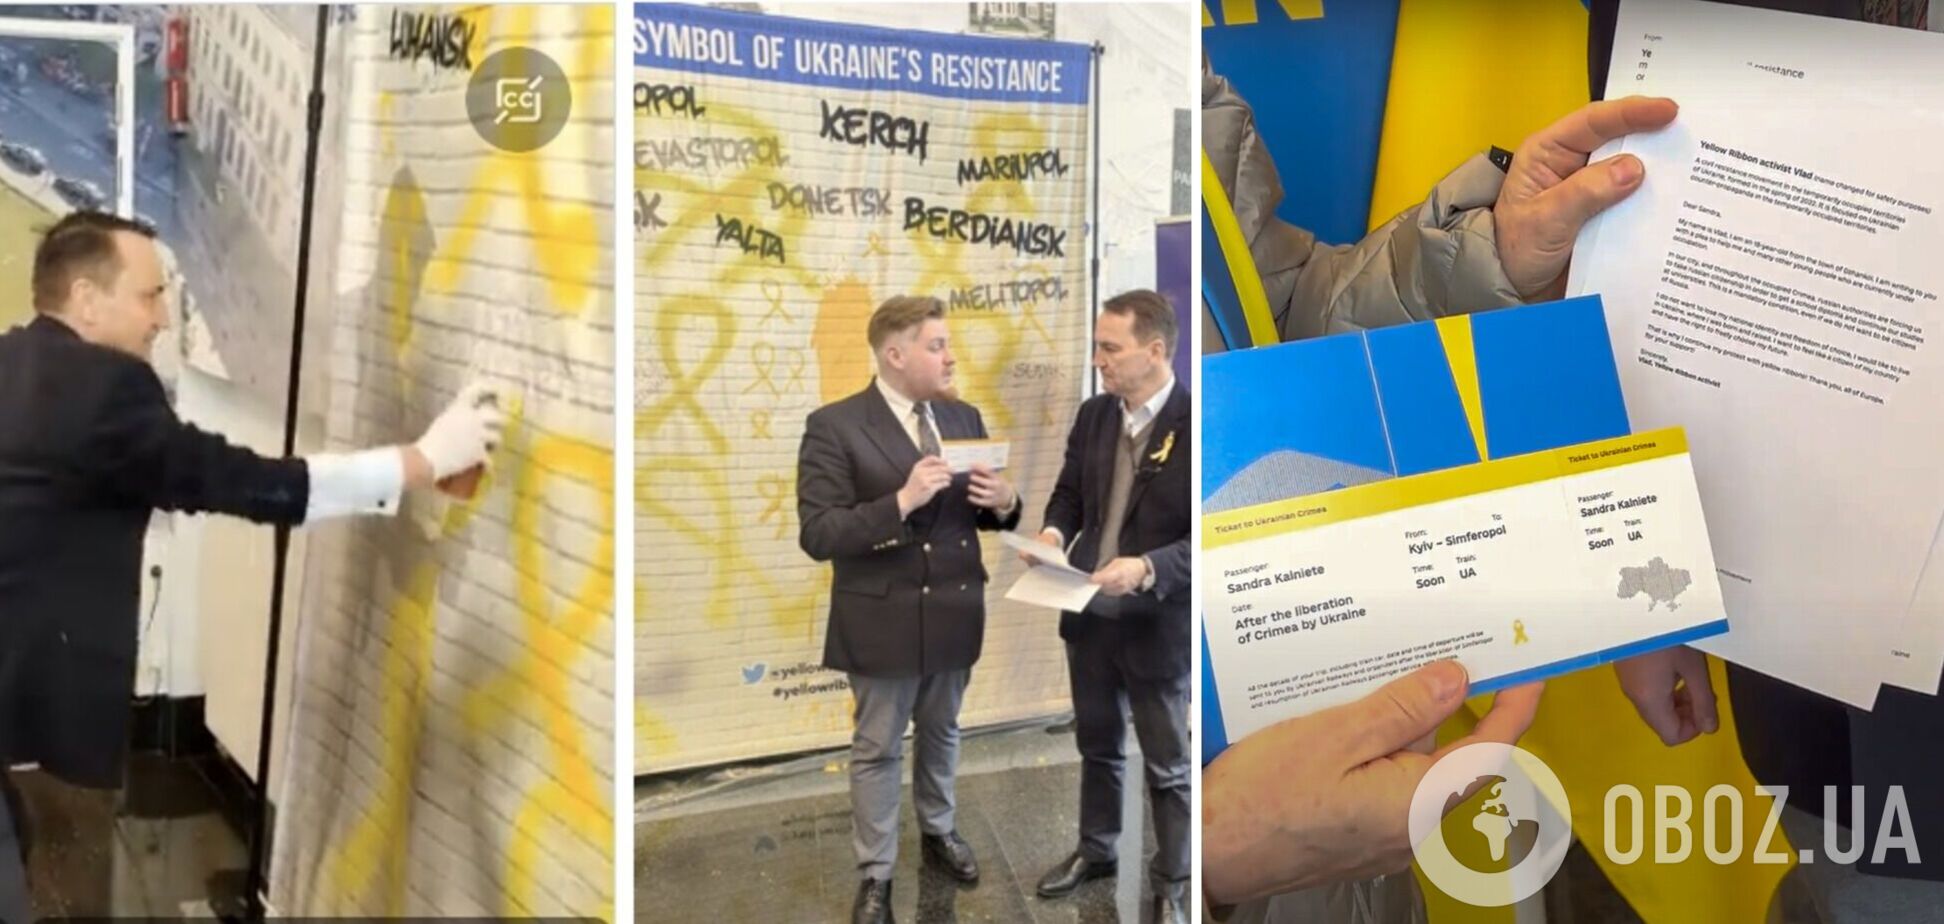 Активисты 'Желтой ленты' передали представителям Европарламента письма с историями сопротивления в Крыму и призвали его поддержать